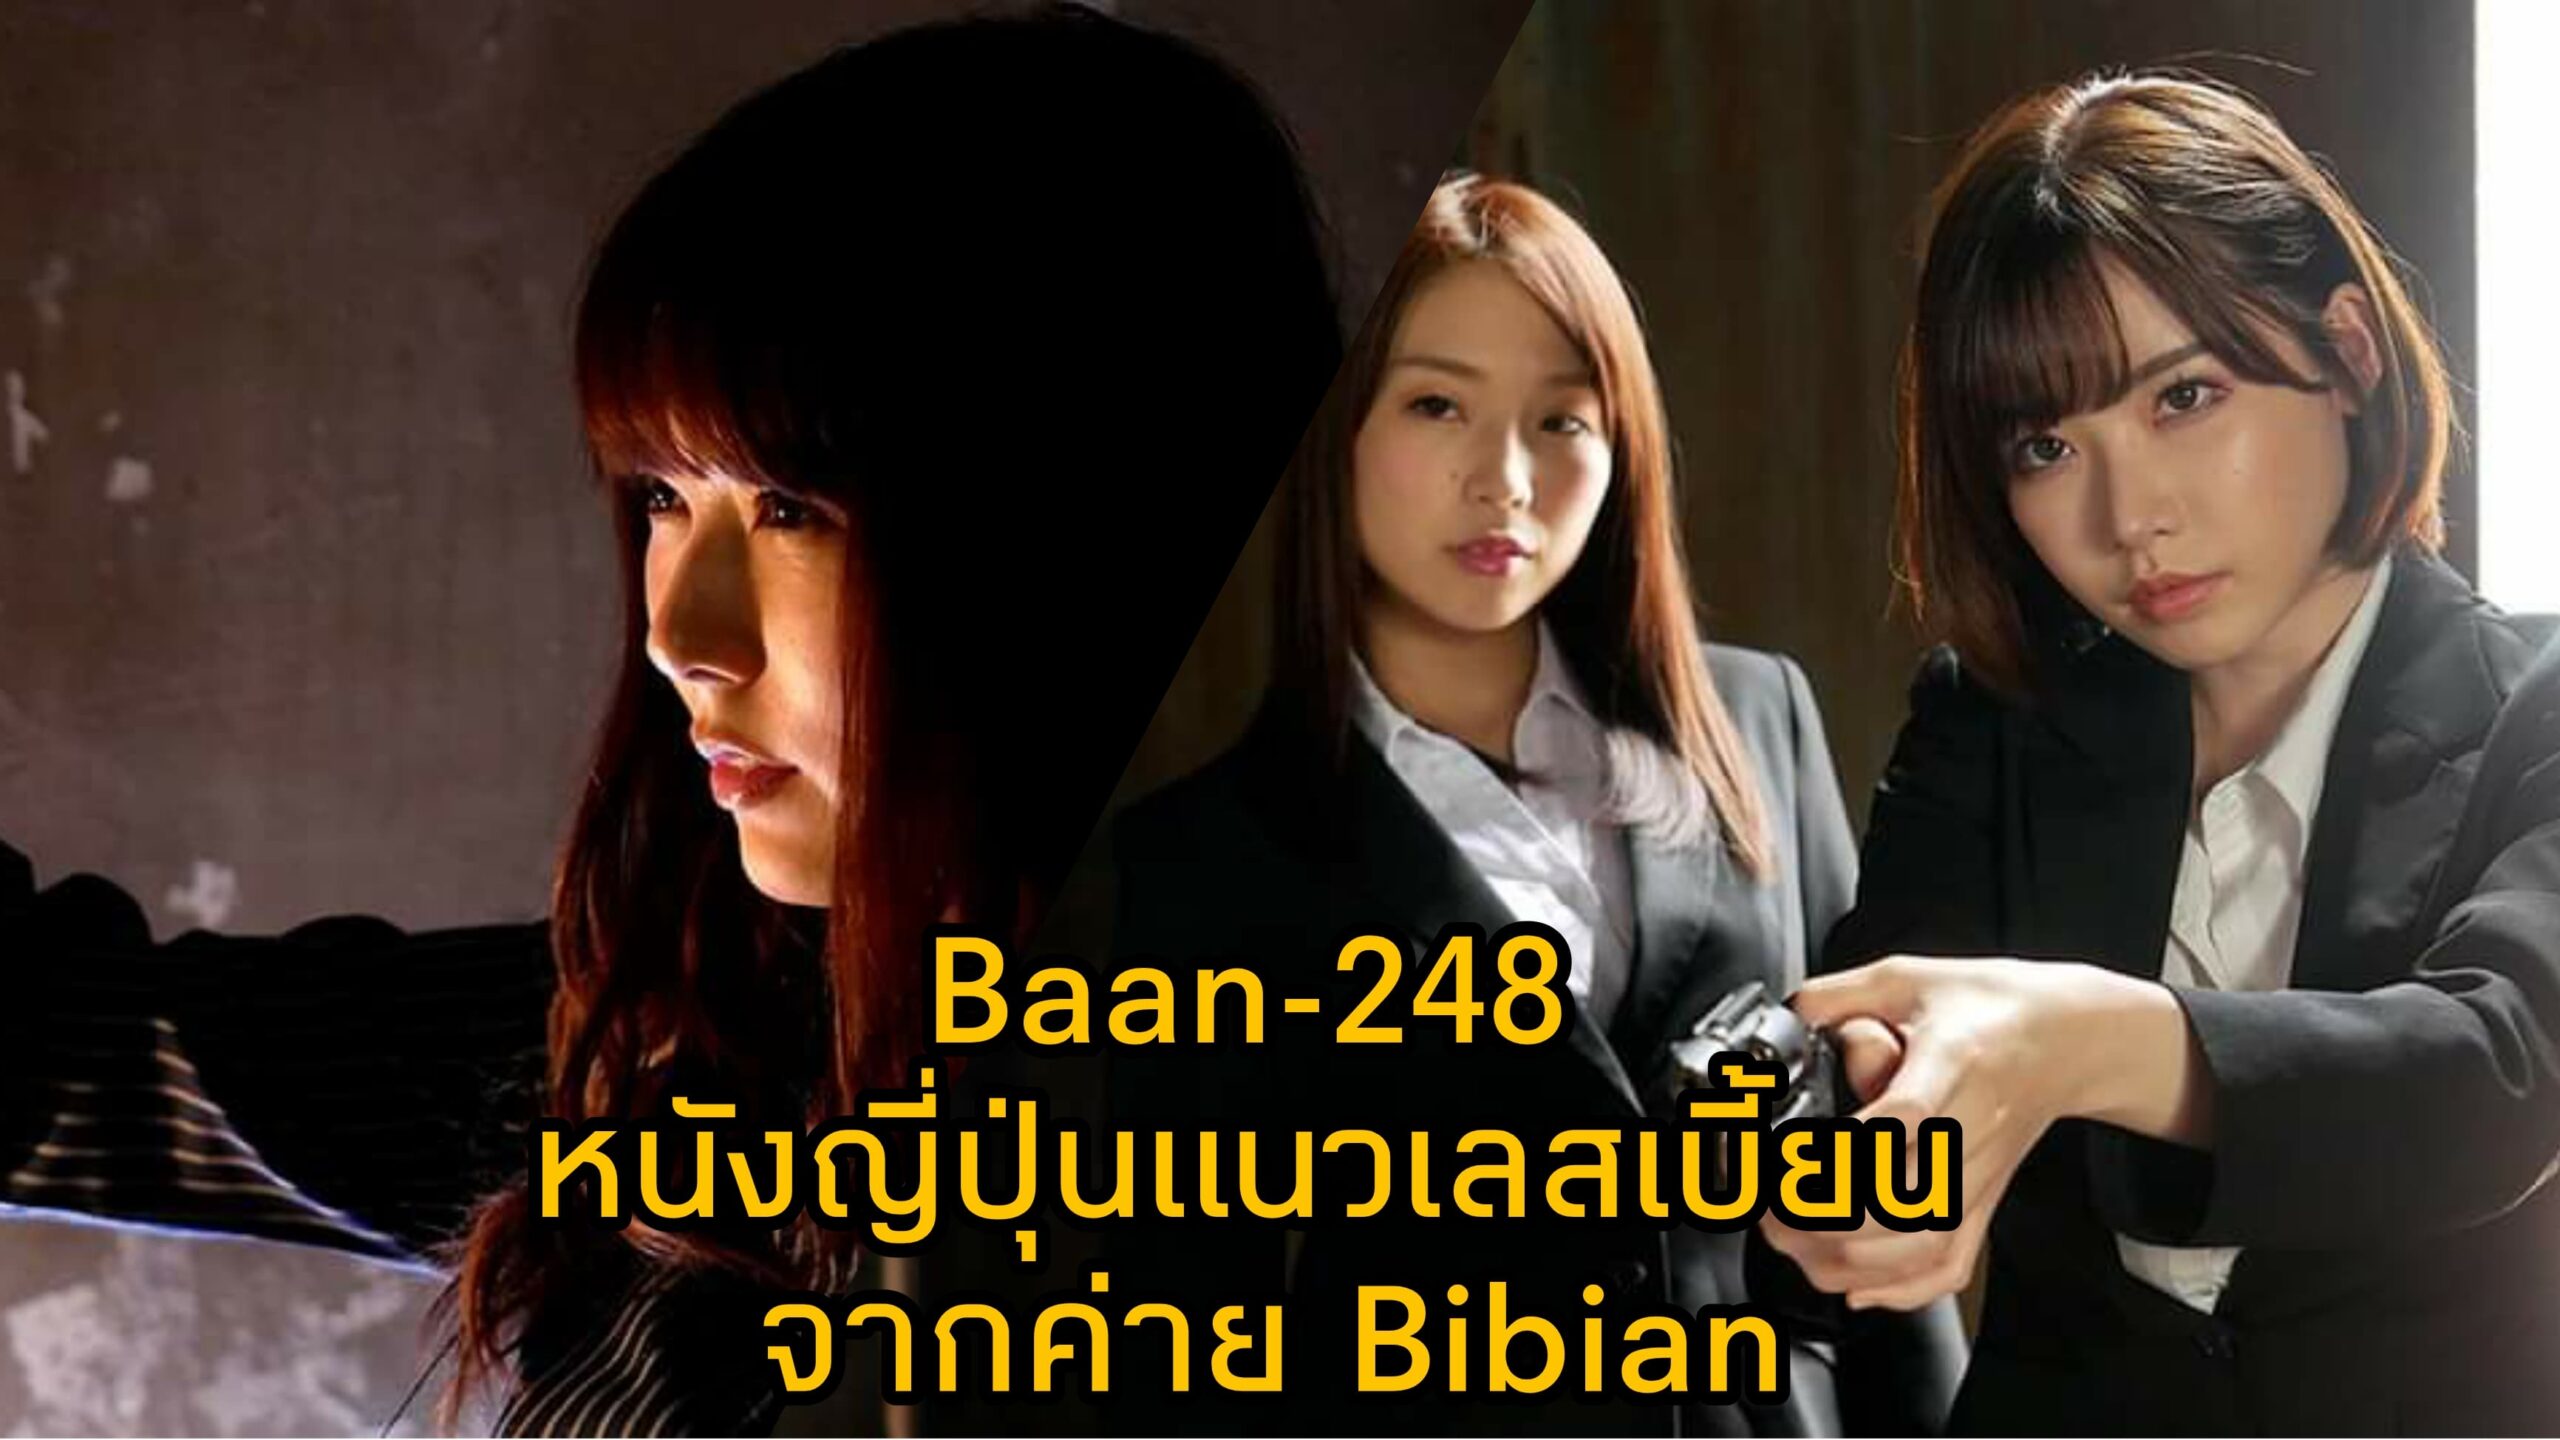 Bann-248 หนัง JAV แนวเลสเบี้ยน นำแสดงโดย 3 ตัวแม่แห่งวงการเอวี Eimi Fukada 18